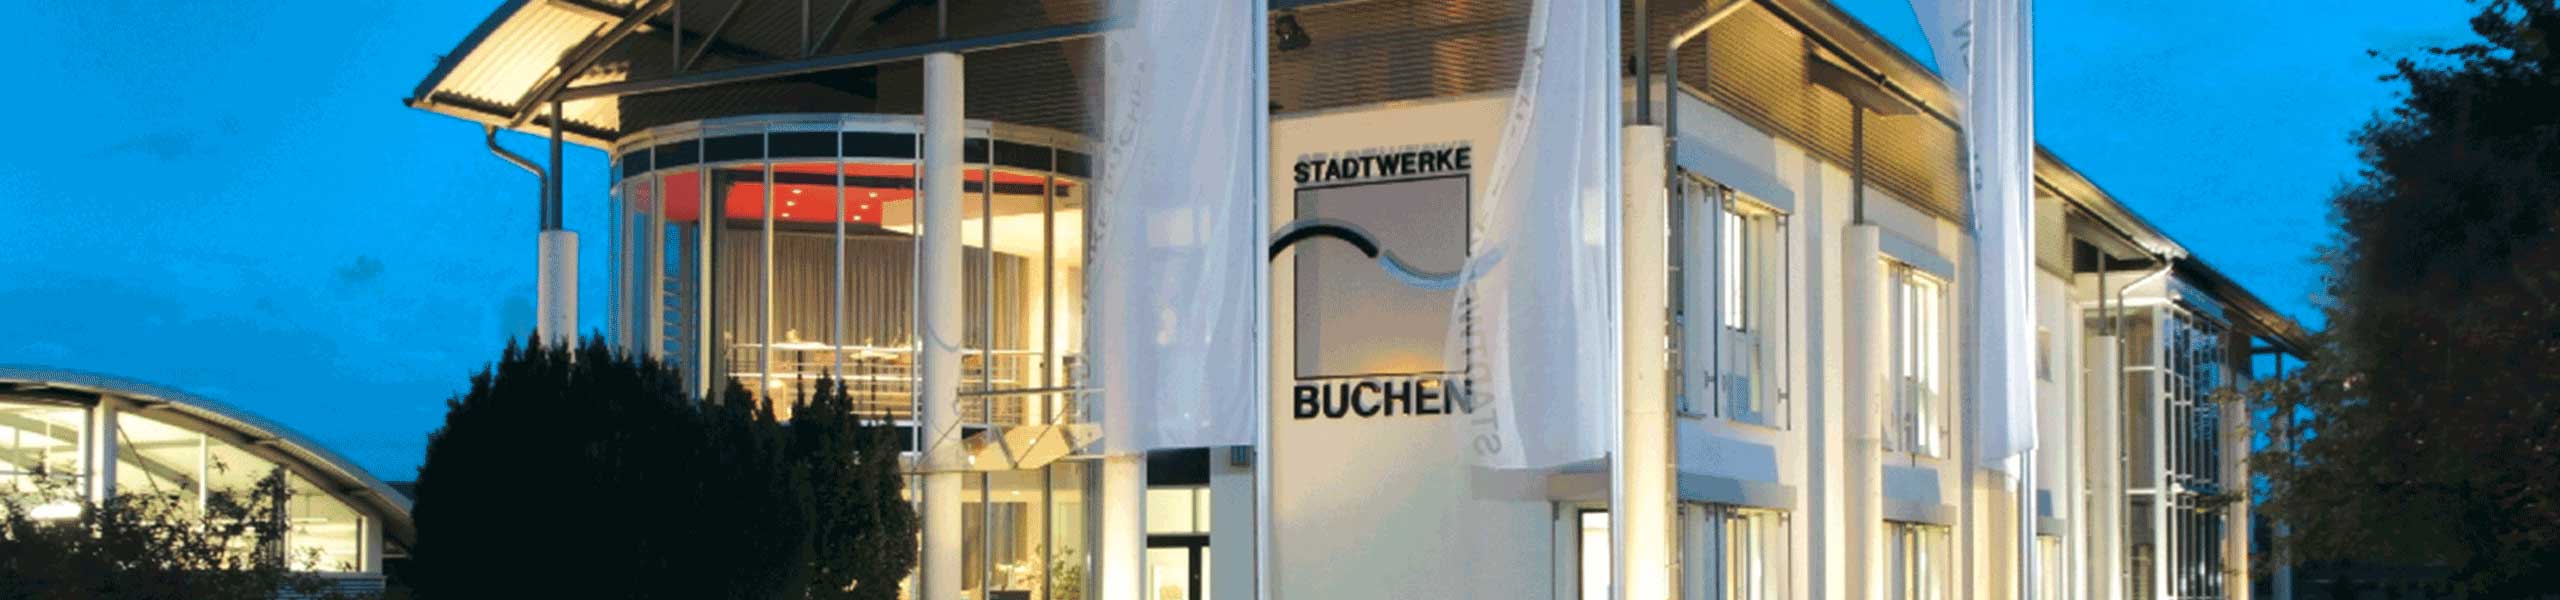 Stadtwerke Buchen GmbH & Co KG - Aktuelle Preisinformationen für die Wasserversorgung